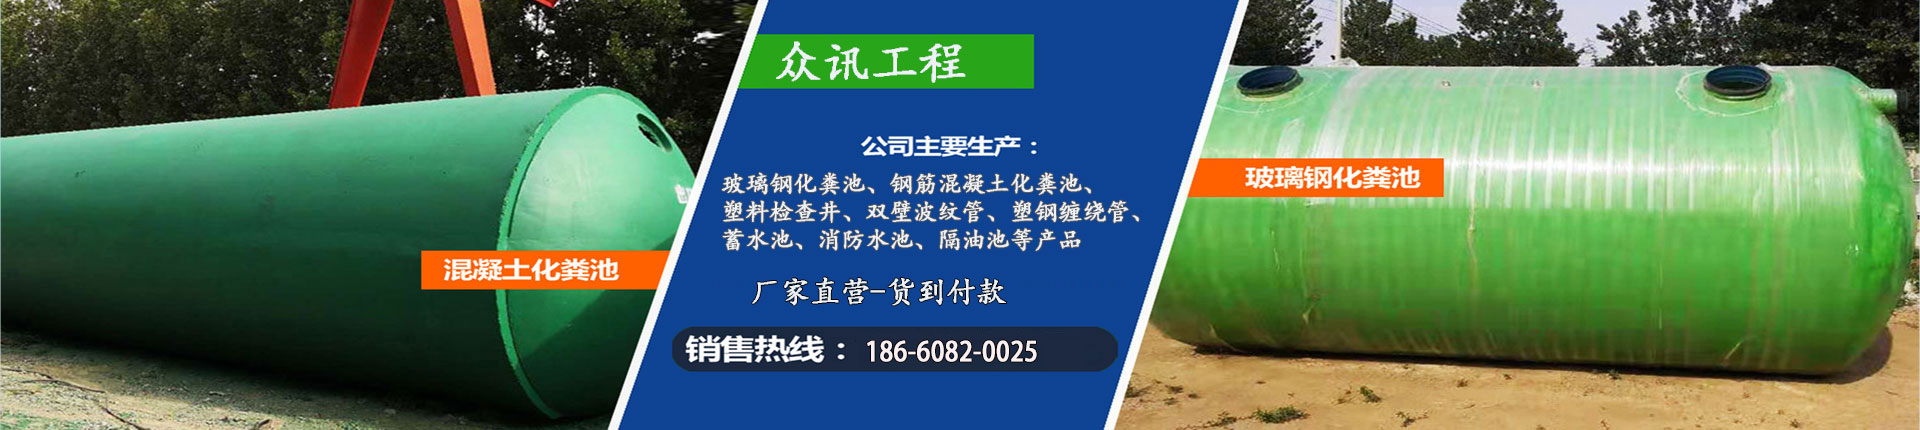 防护虹吸排水收集系统、重庆本地防护虹吸排水收集系统、重庆、重庆防护虹吸排水收集系统